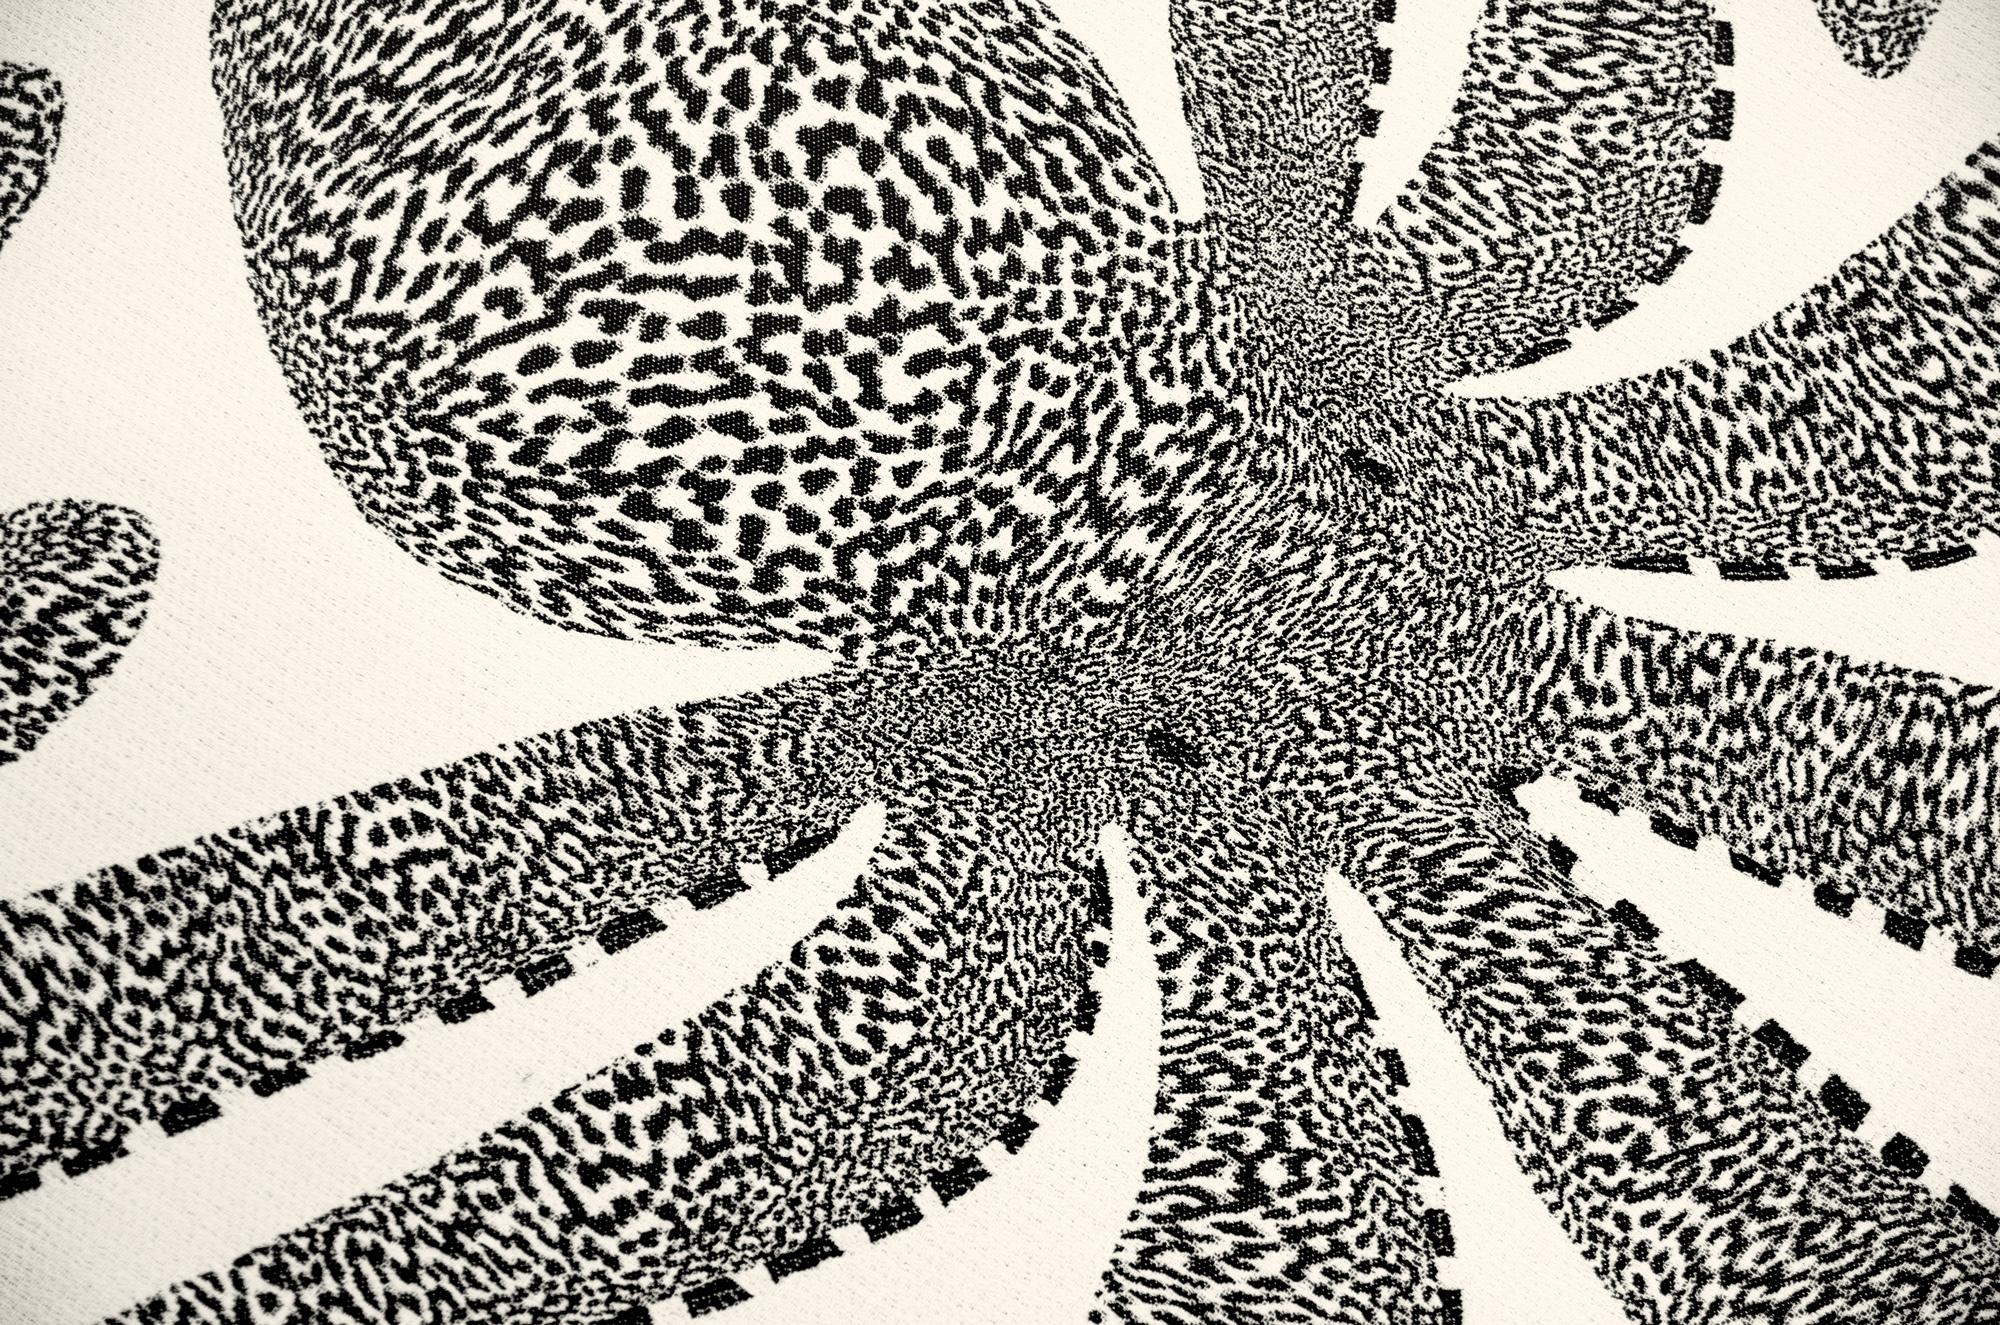 Octopus-Deckendecke aus Jacquard in Schwarz und Weiß (Baumwolle)